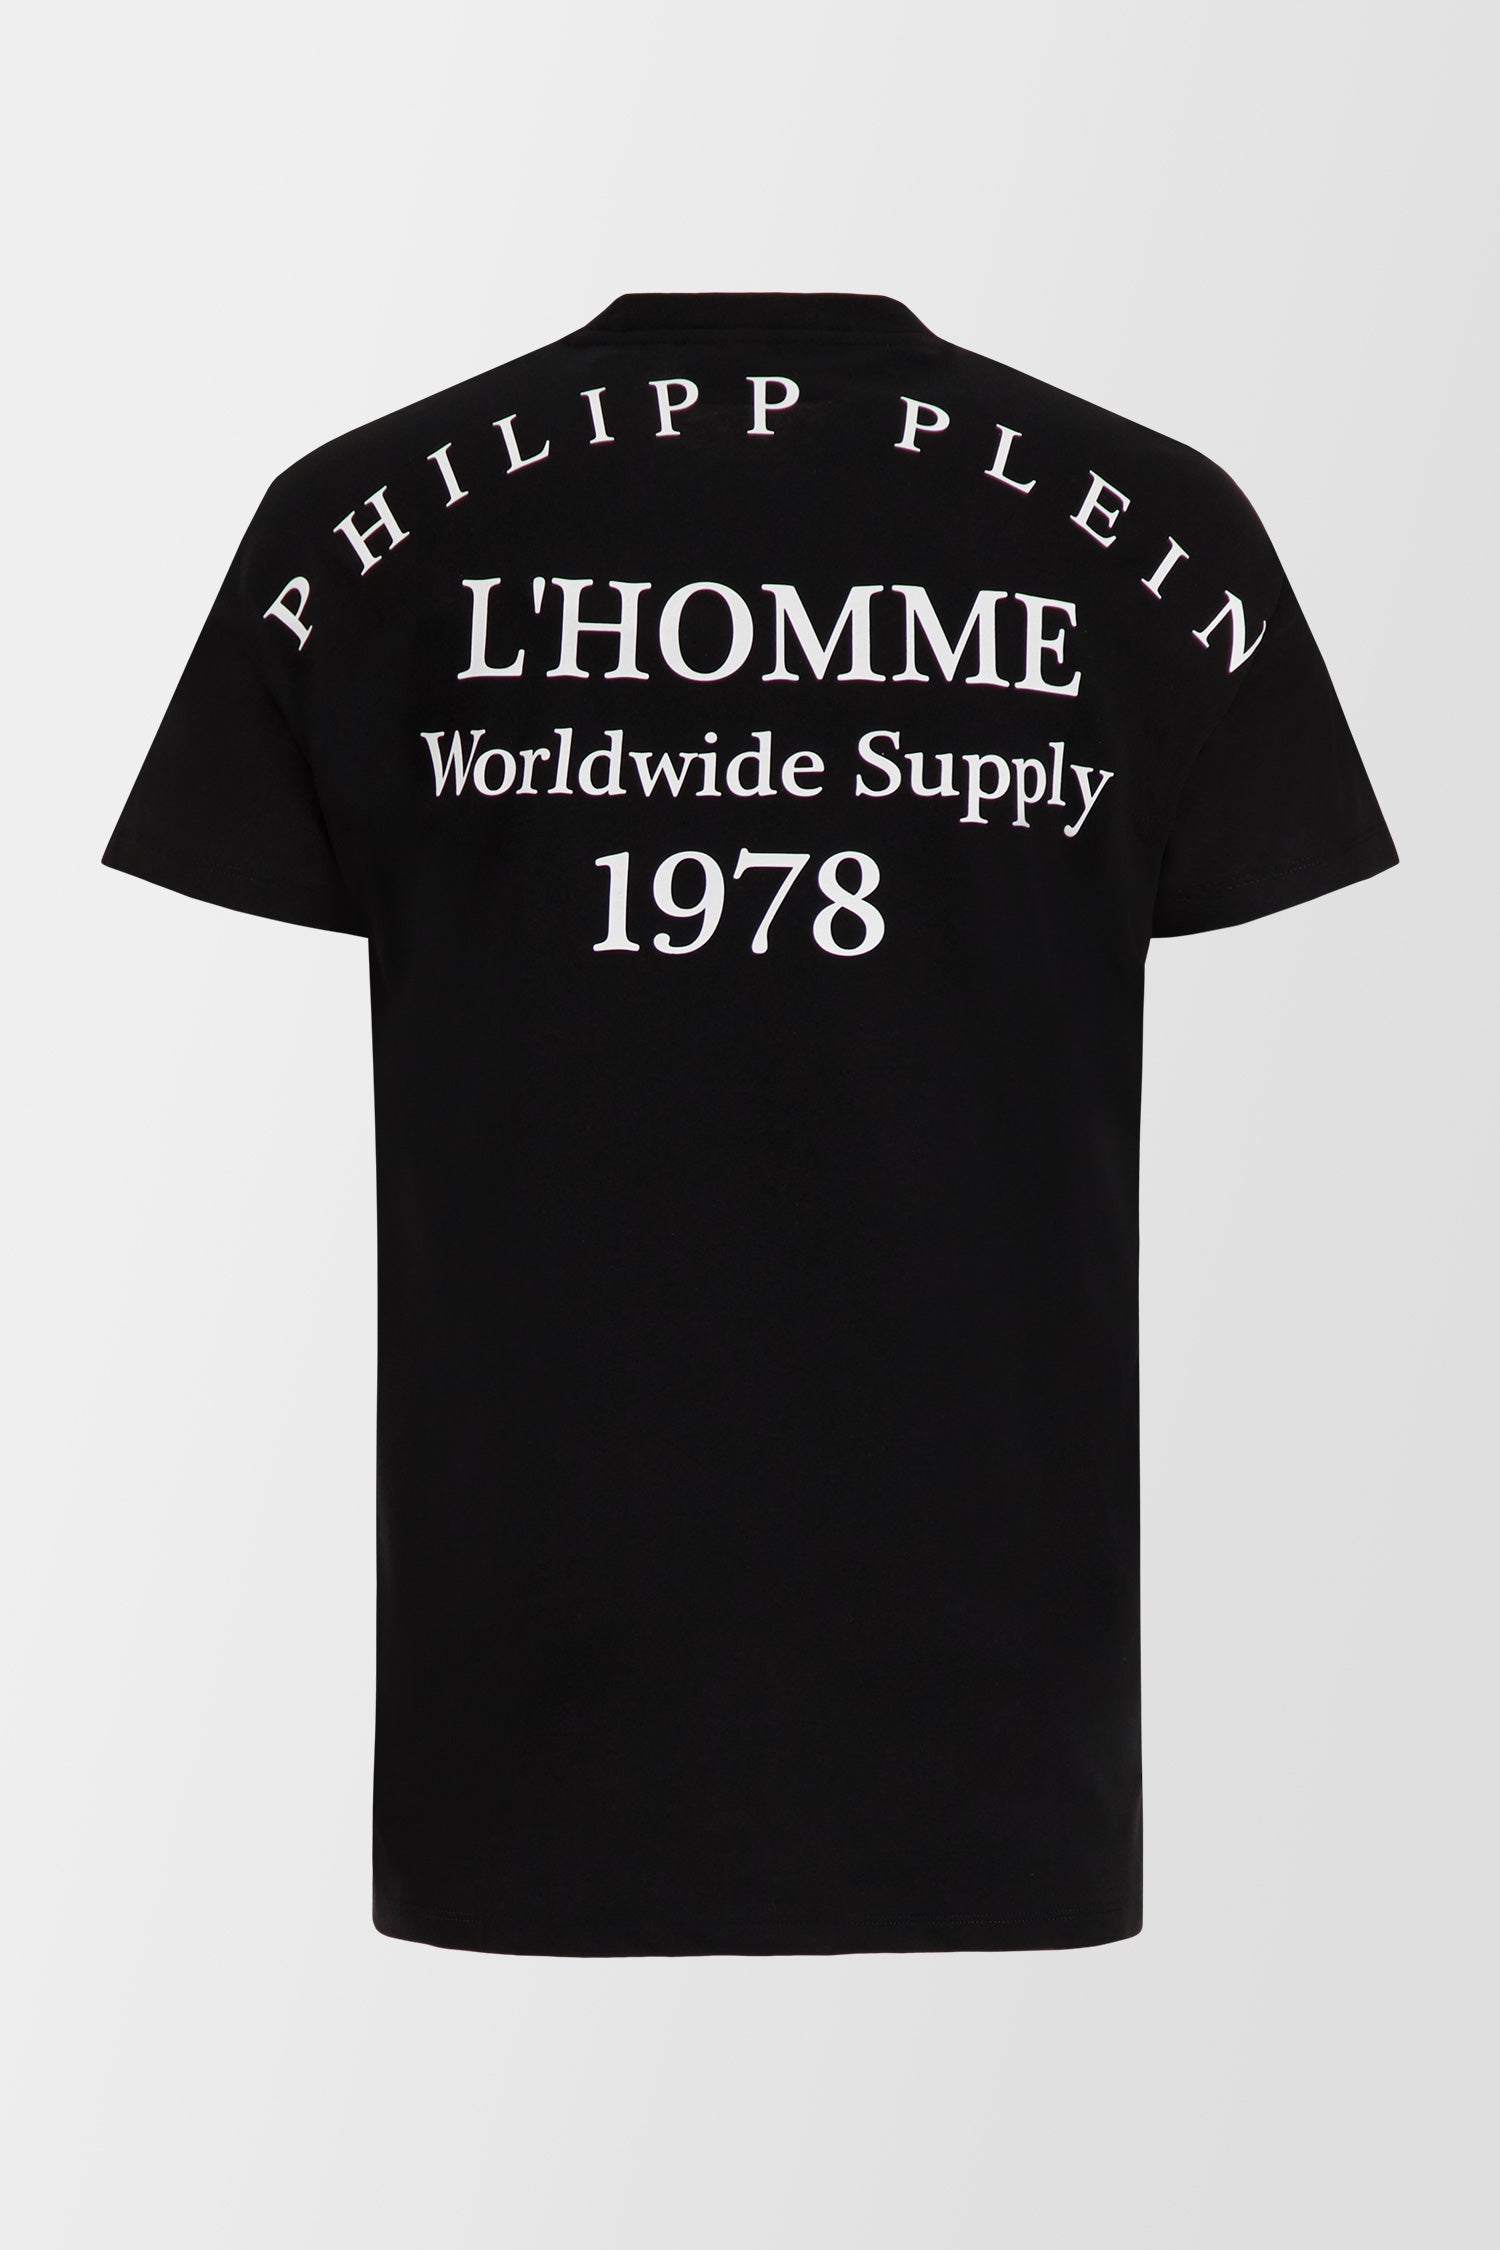 Philipp Plein Black Round Neck SS PP 1978 T-Shirt